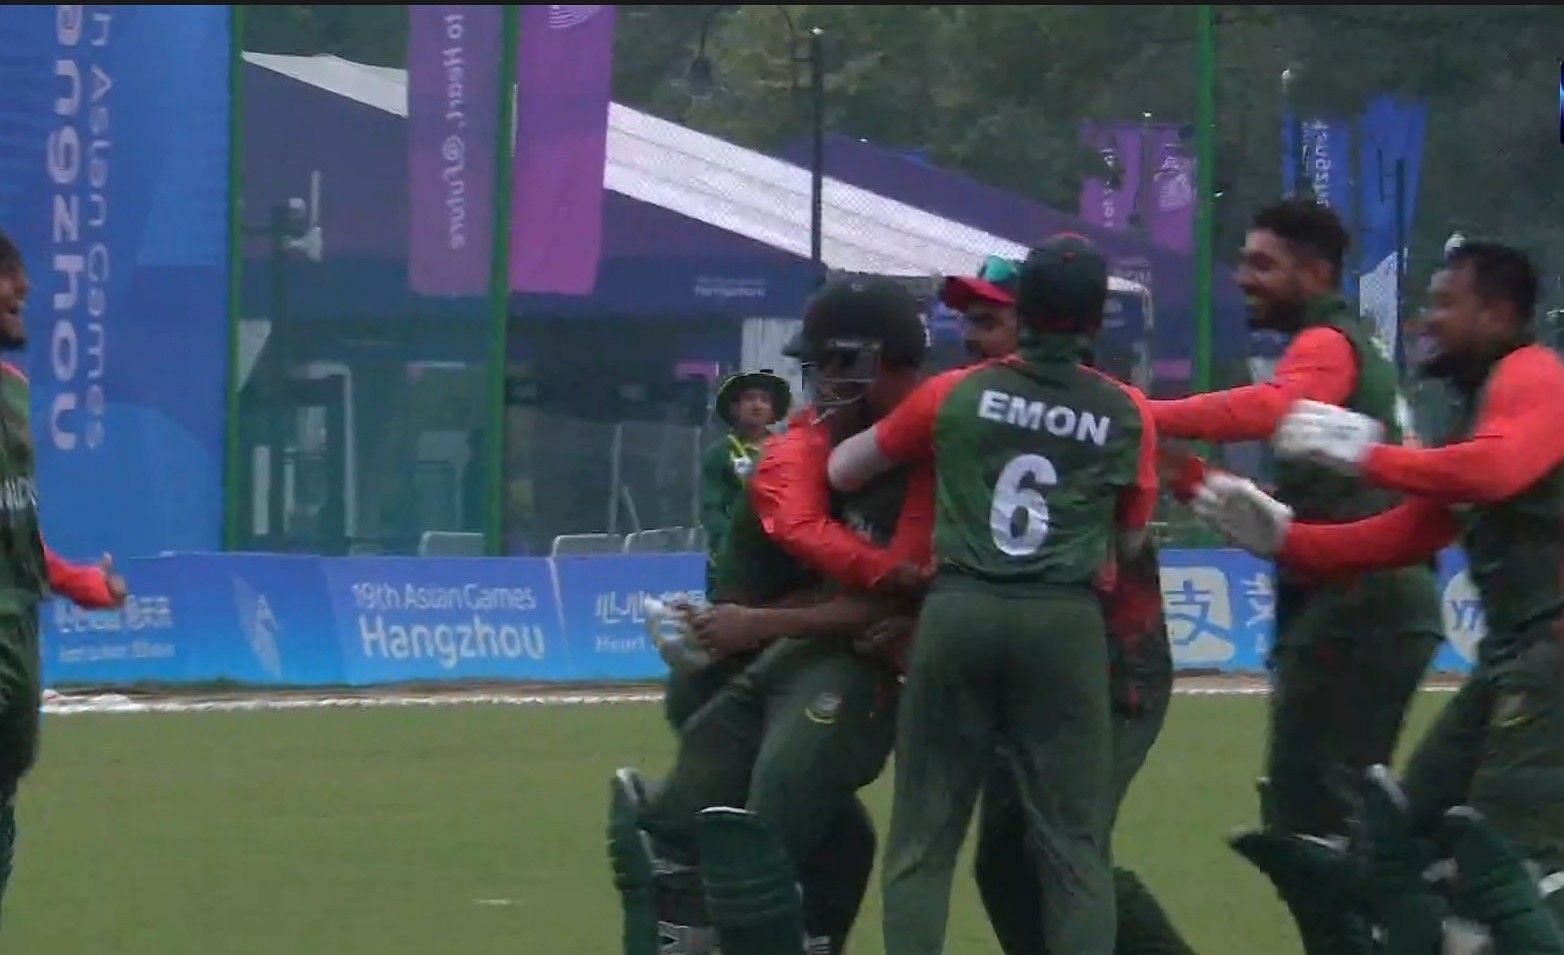 बांग्लादेश की टीम ने हासिल की जबरदस्त जीत (Photo Credit - Twitter)